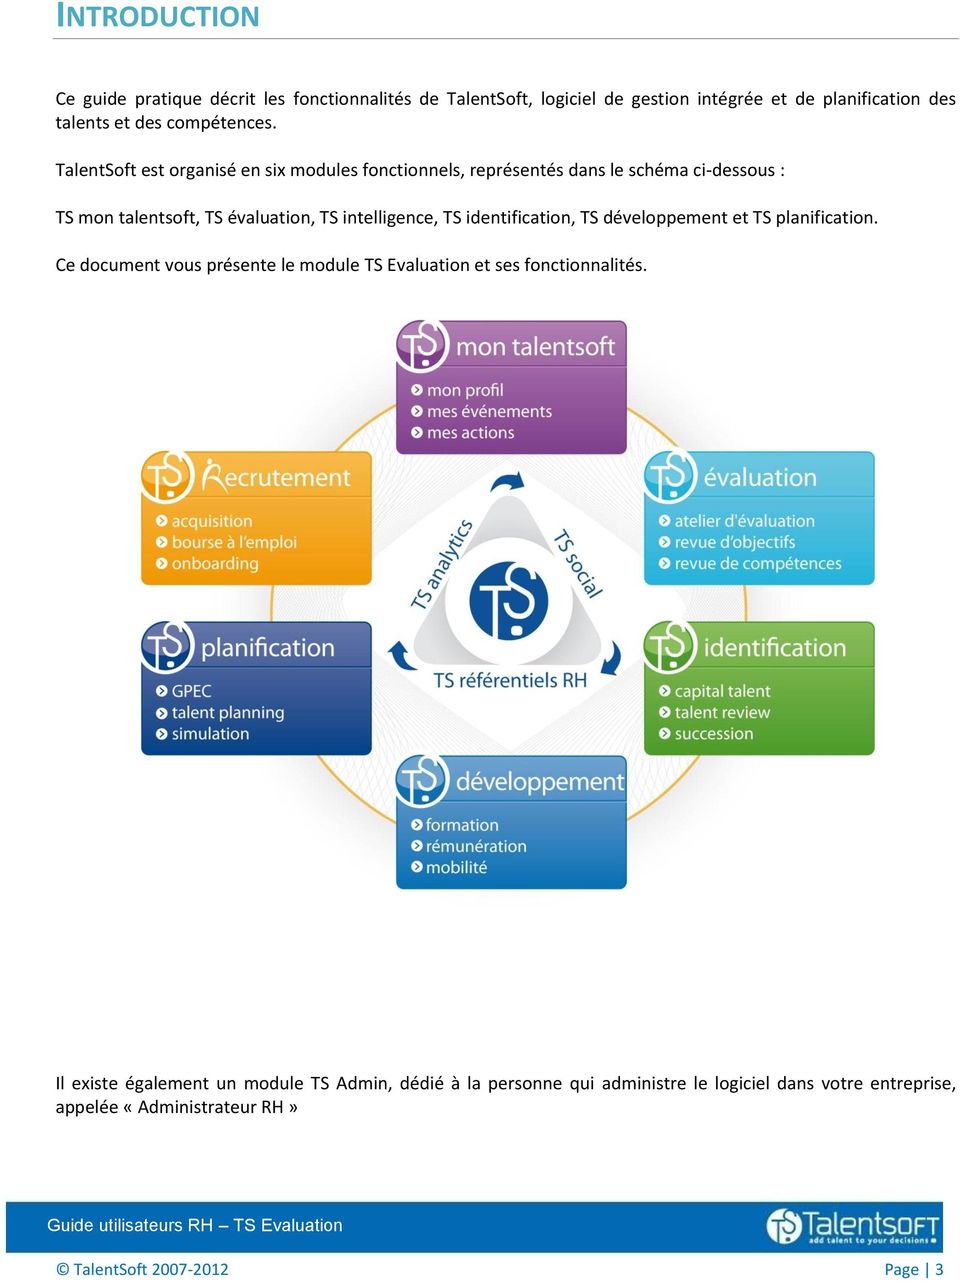 TalentSoft est organisé en six modules fonctionnels, représentés dans le schéma ci-dessous : TS mon talentsoft, TS évaluation, TS intelligence, TS